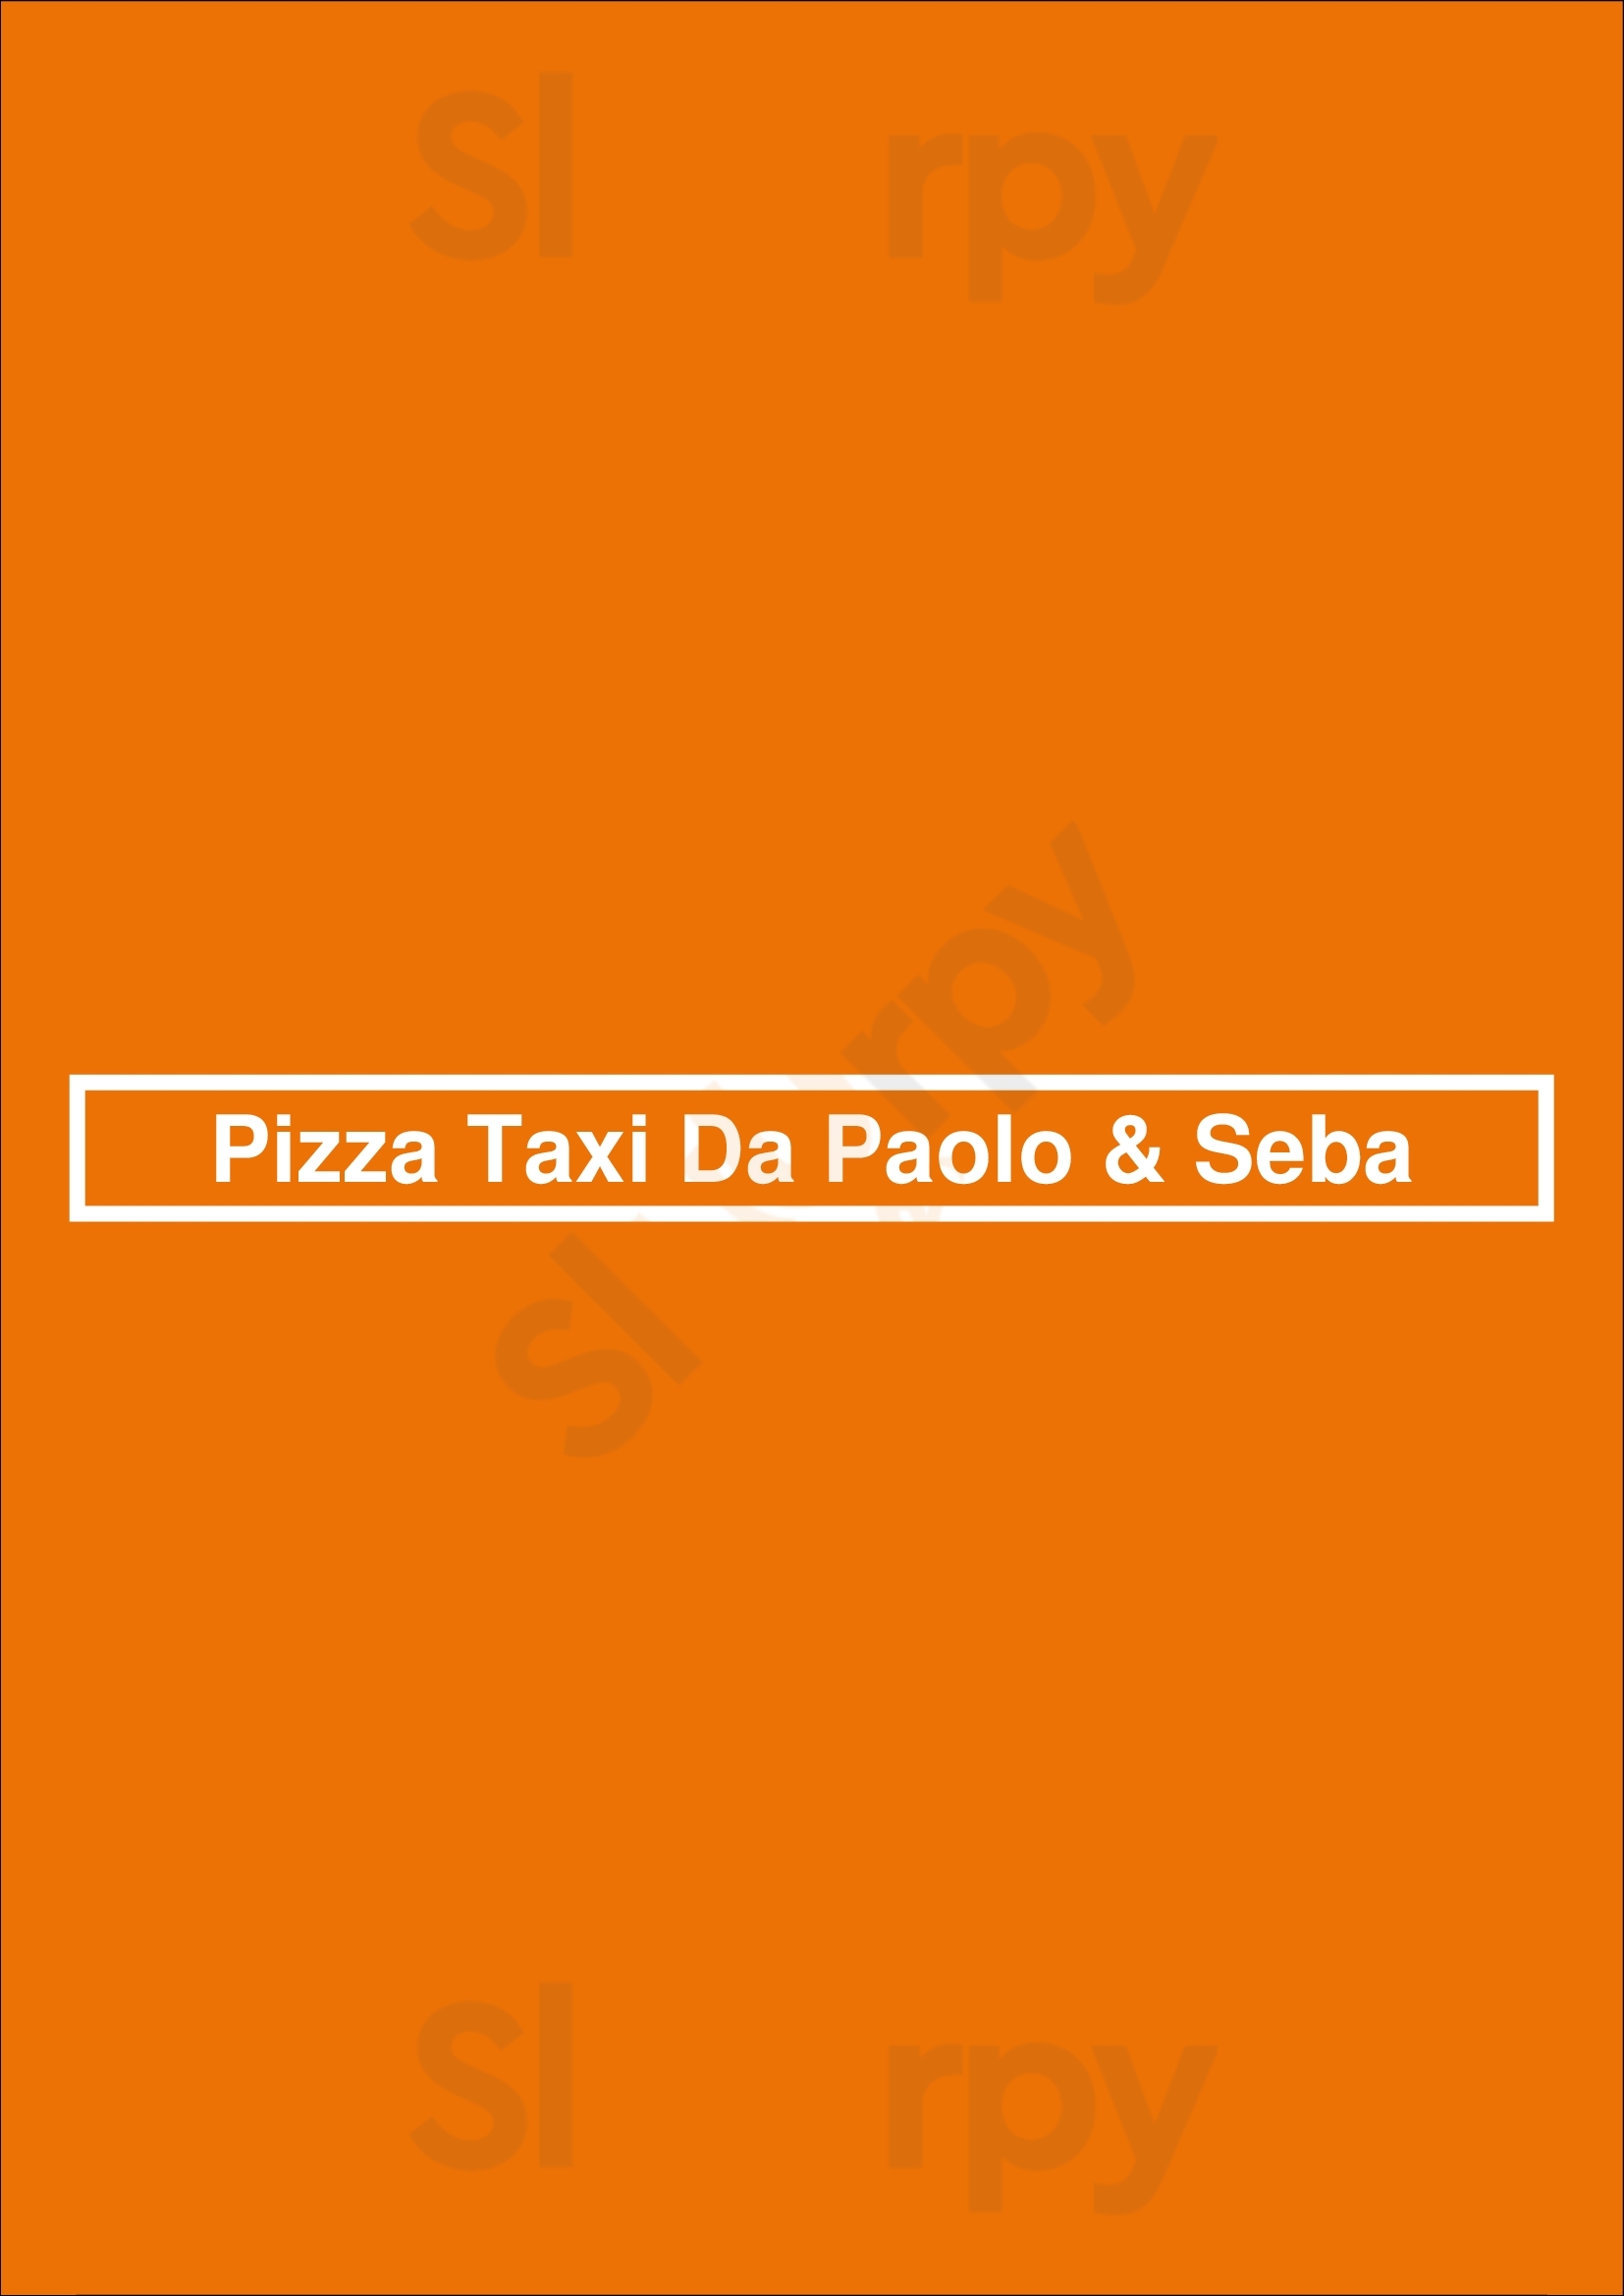 Pizza Taxi Da Paolo & Seba Amsterdam Menu - 1